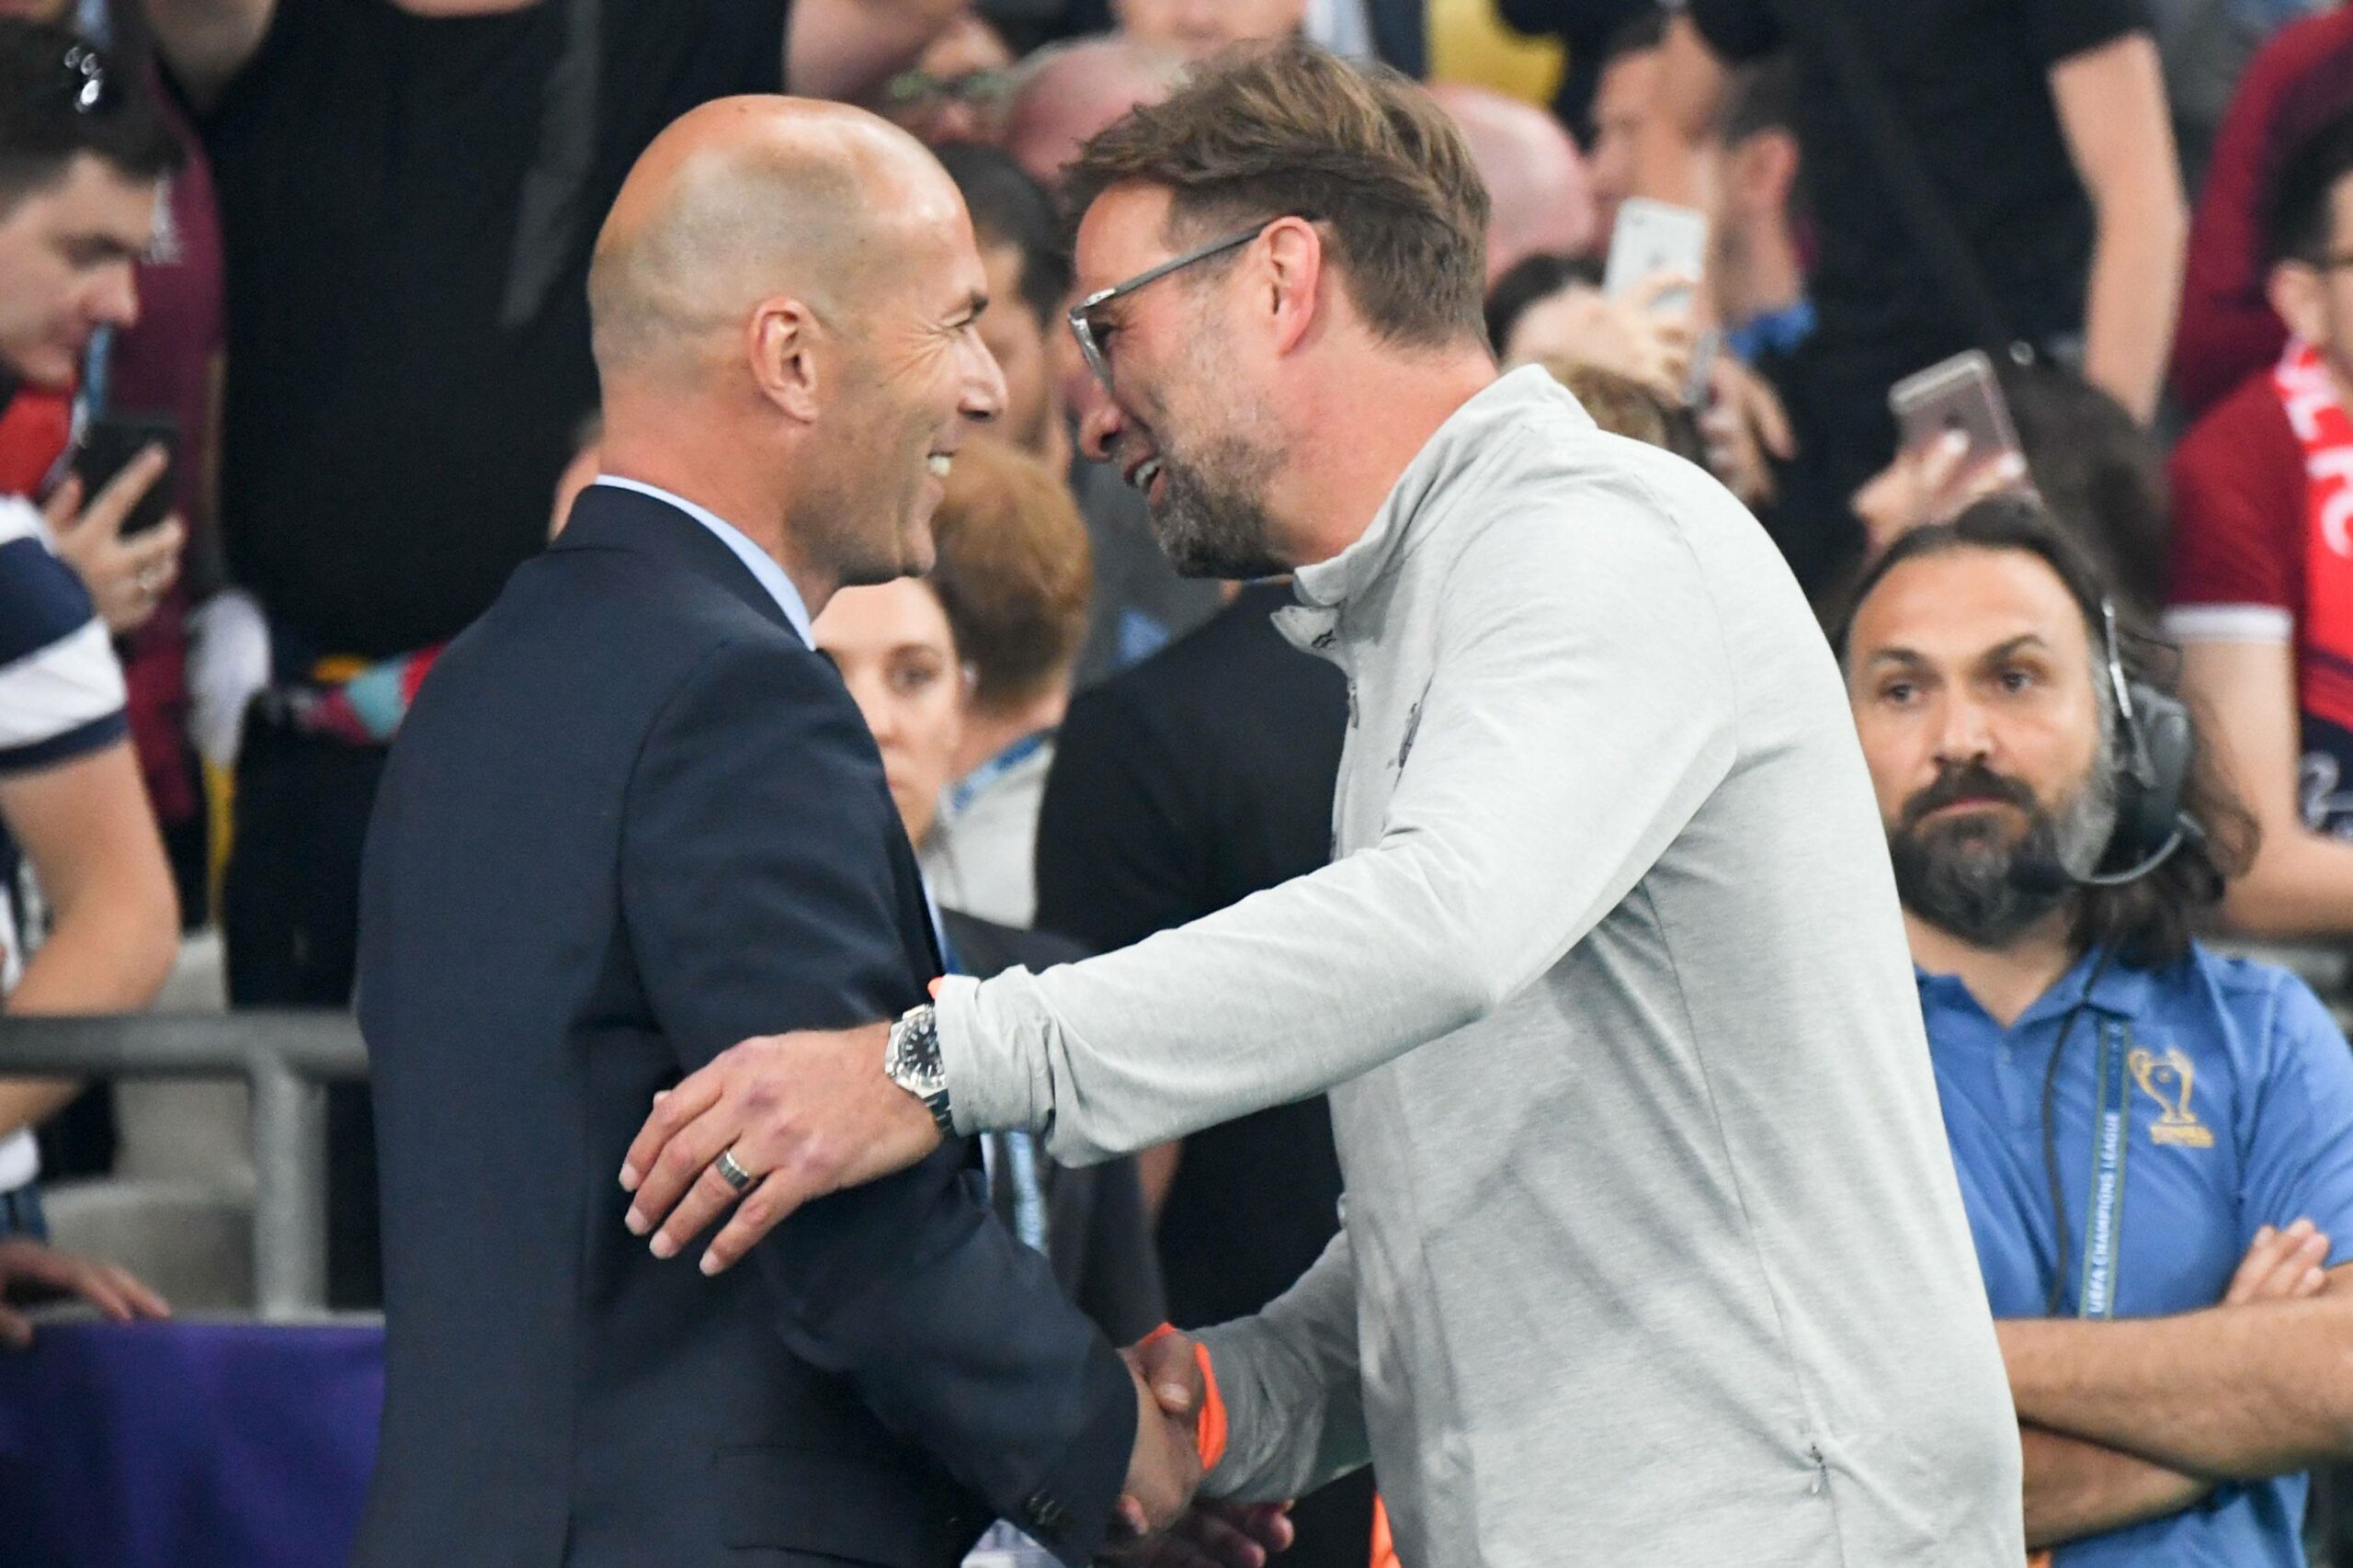 Real Madrid empfängt den Liverpool FC zur Neuauflage des Finals 2018